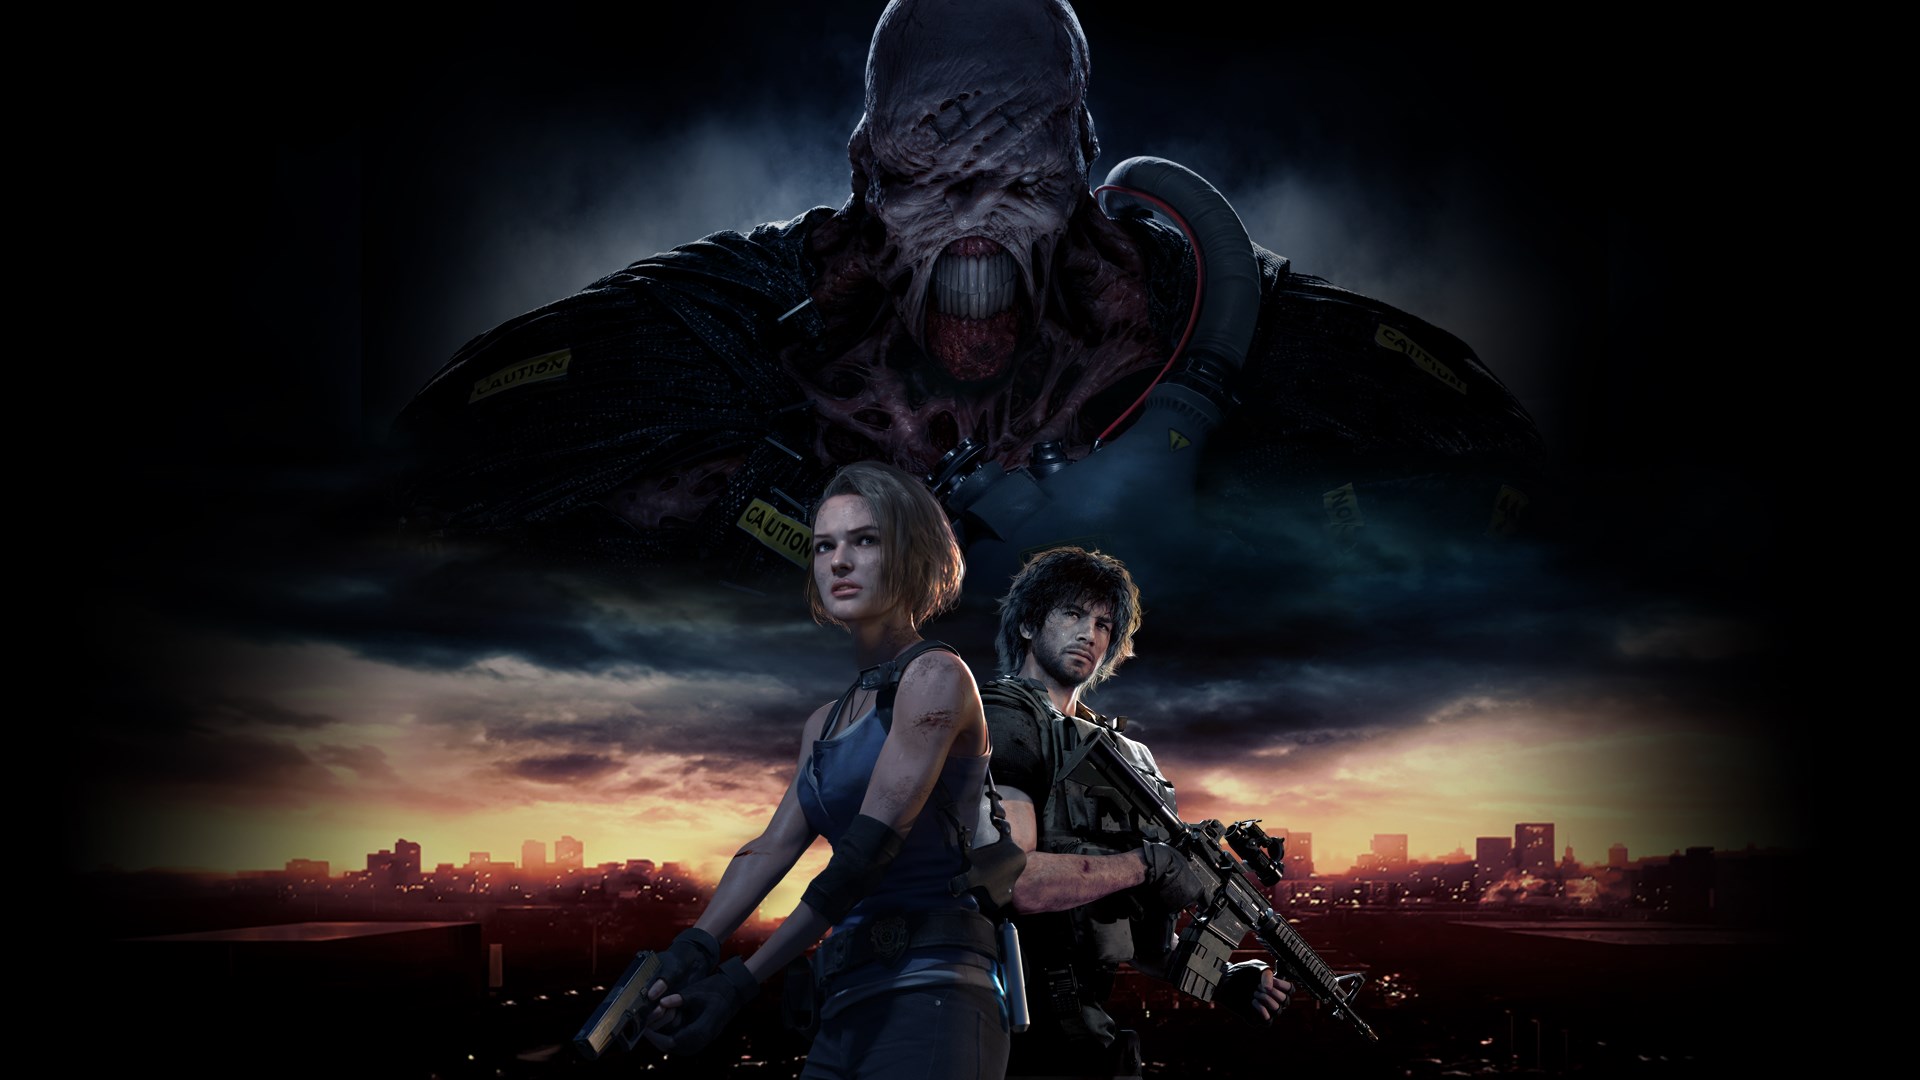 Resident Evil 3+Resident Evil Resistance XBOX ONE